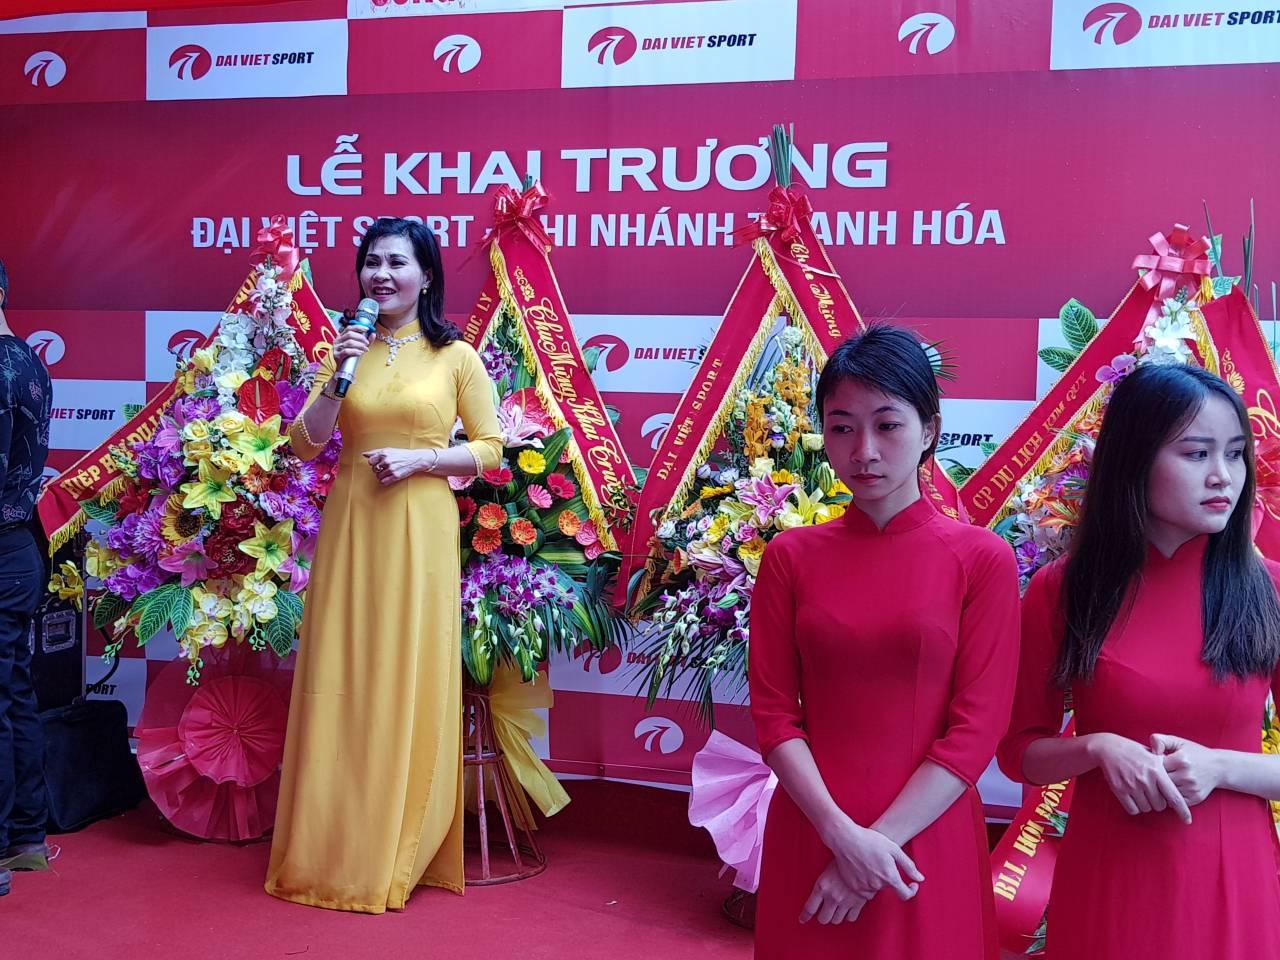 Ngày Vàng - Khai trương cửa hàng Đại Việt Sport Thanh Hóa